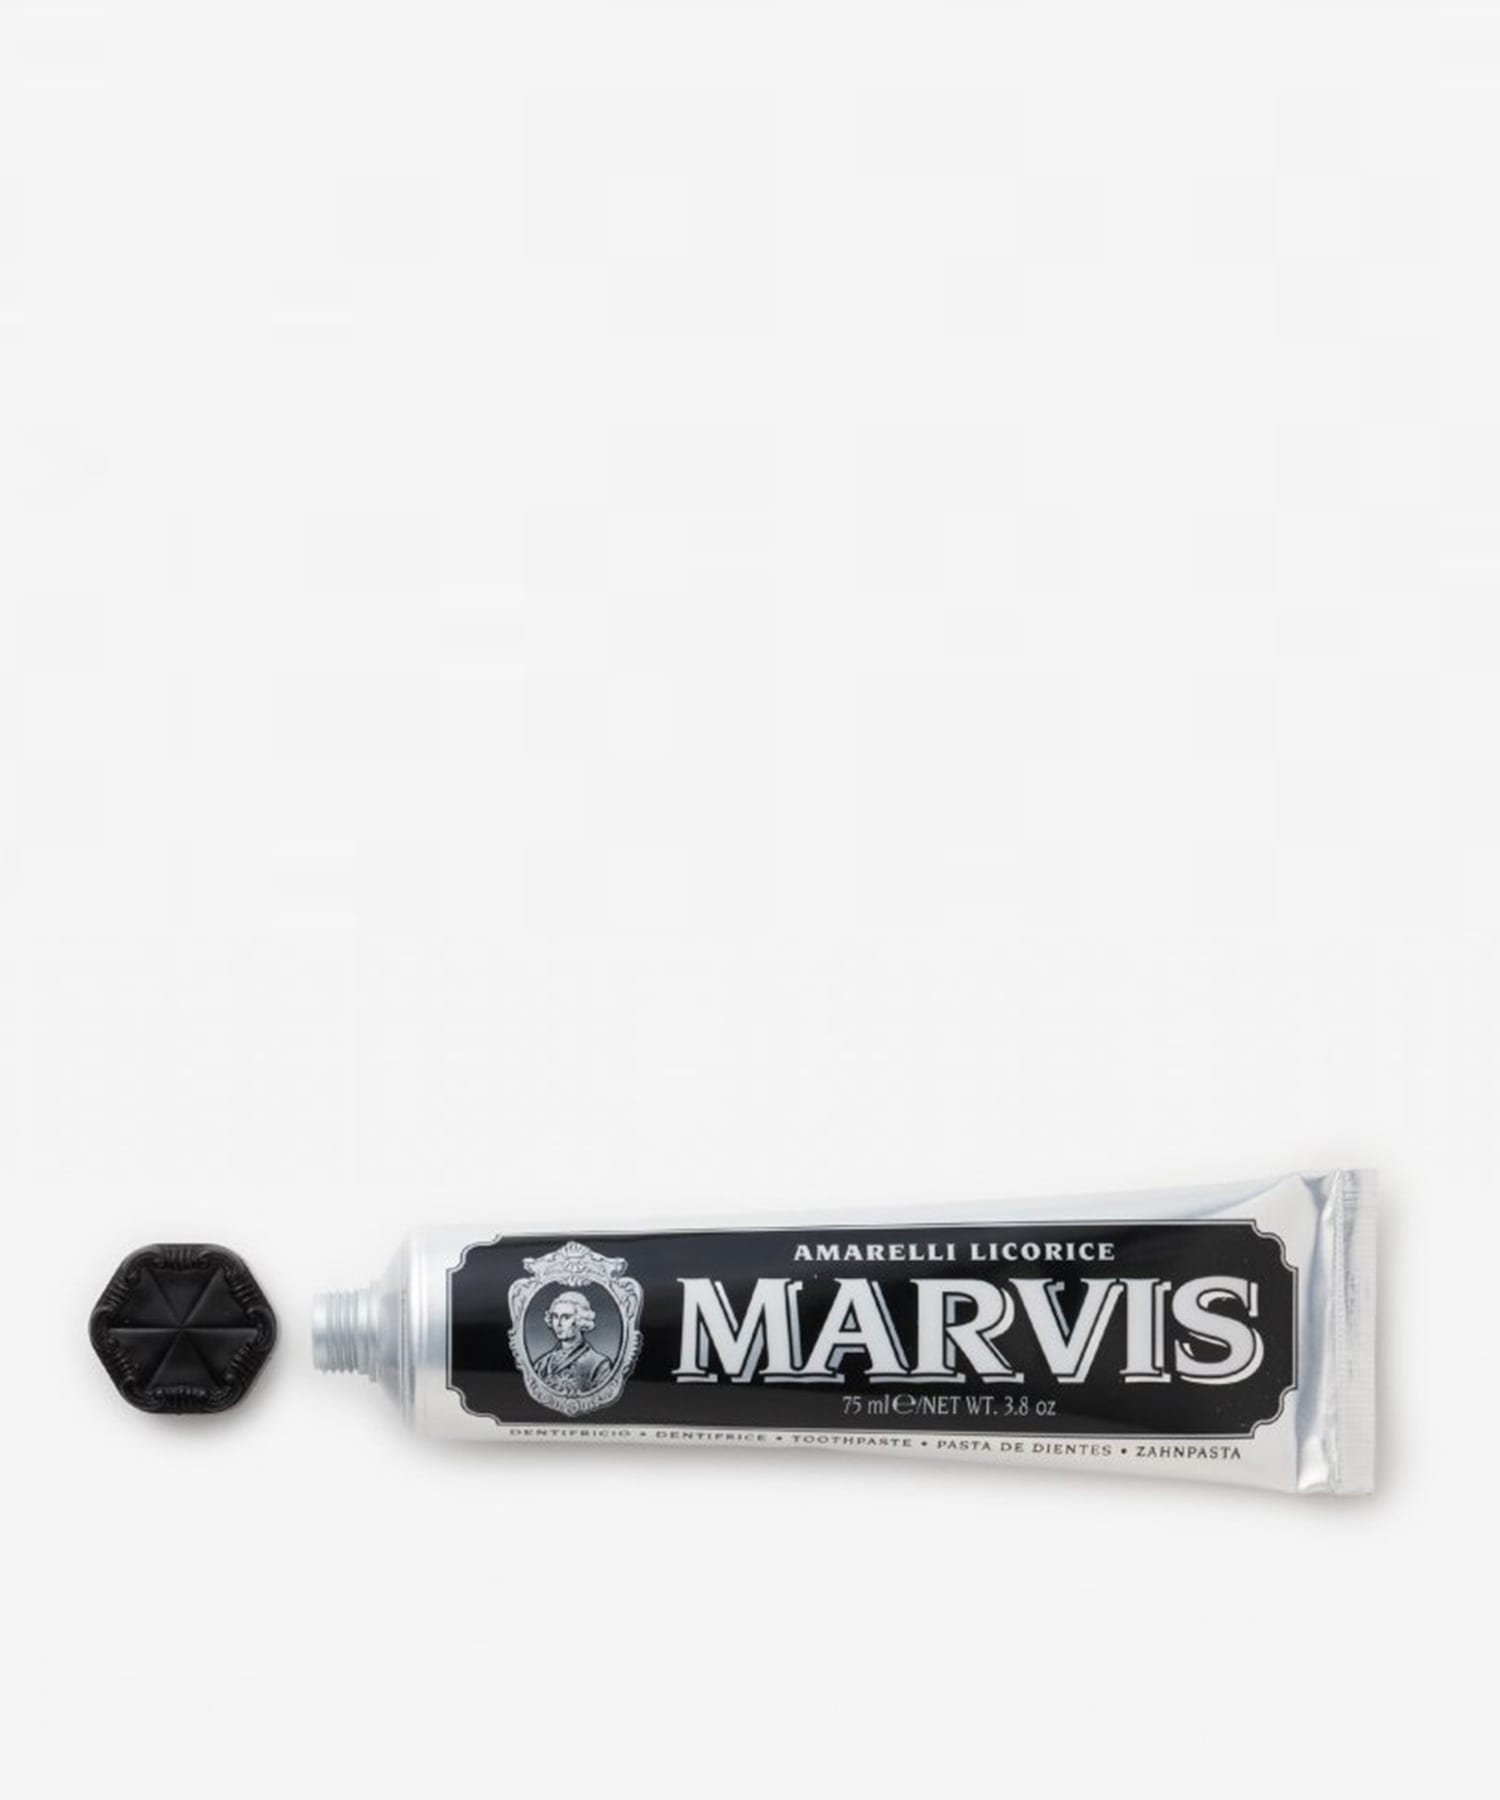 MARVIS / "リコラス ミント" トゥースペースト 75ml